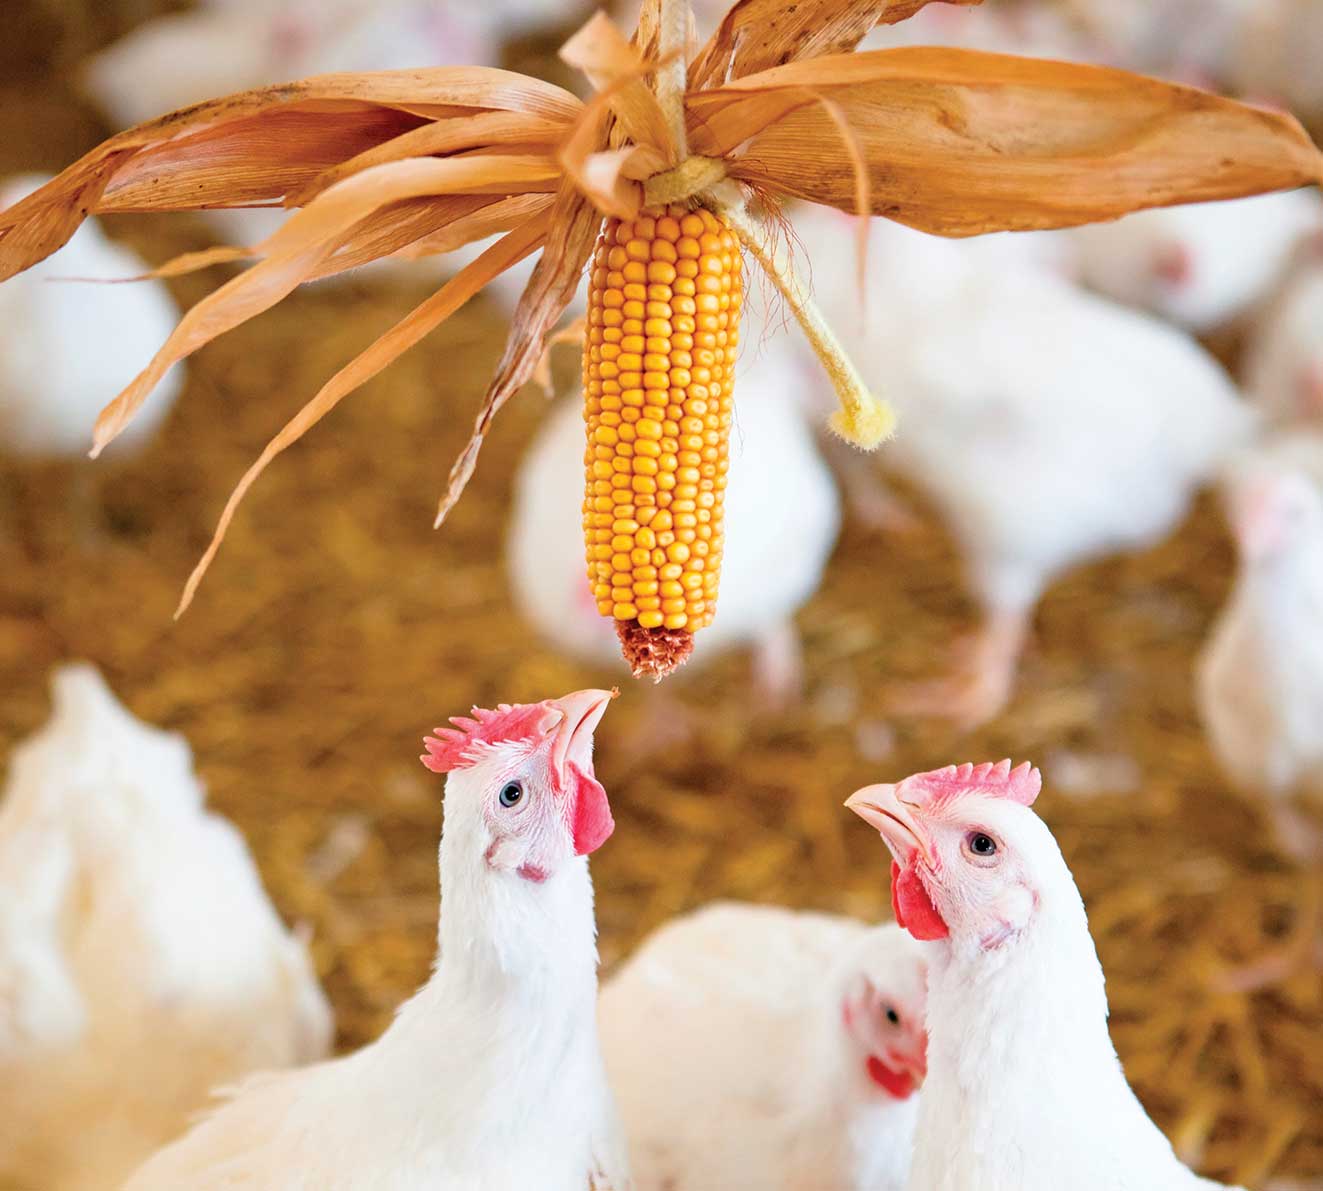 ۴۵واحد تولیدکننده مرغ متخلف به تعزیرات حکومتی معرفی شدند